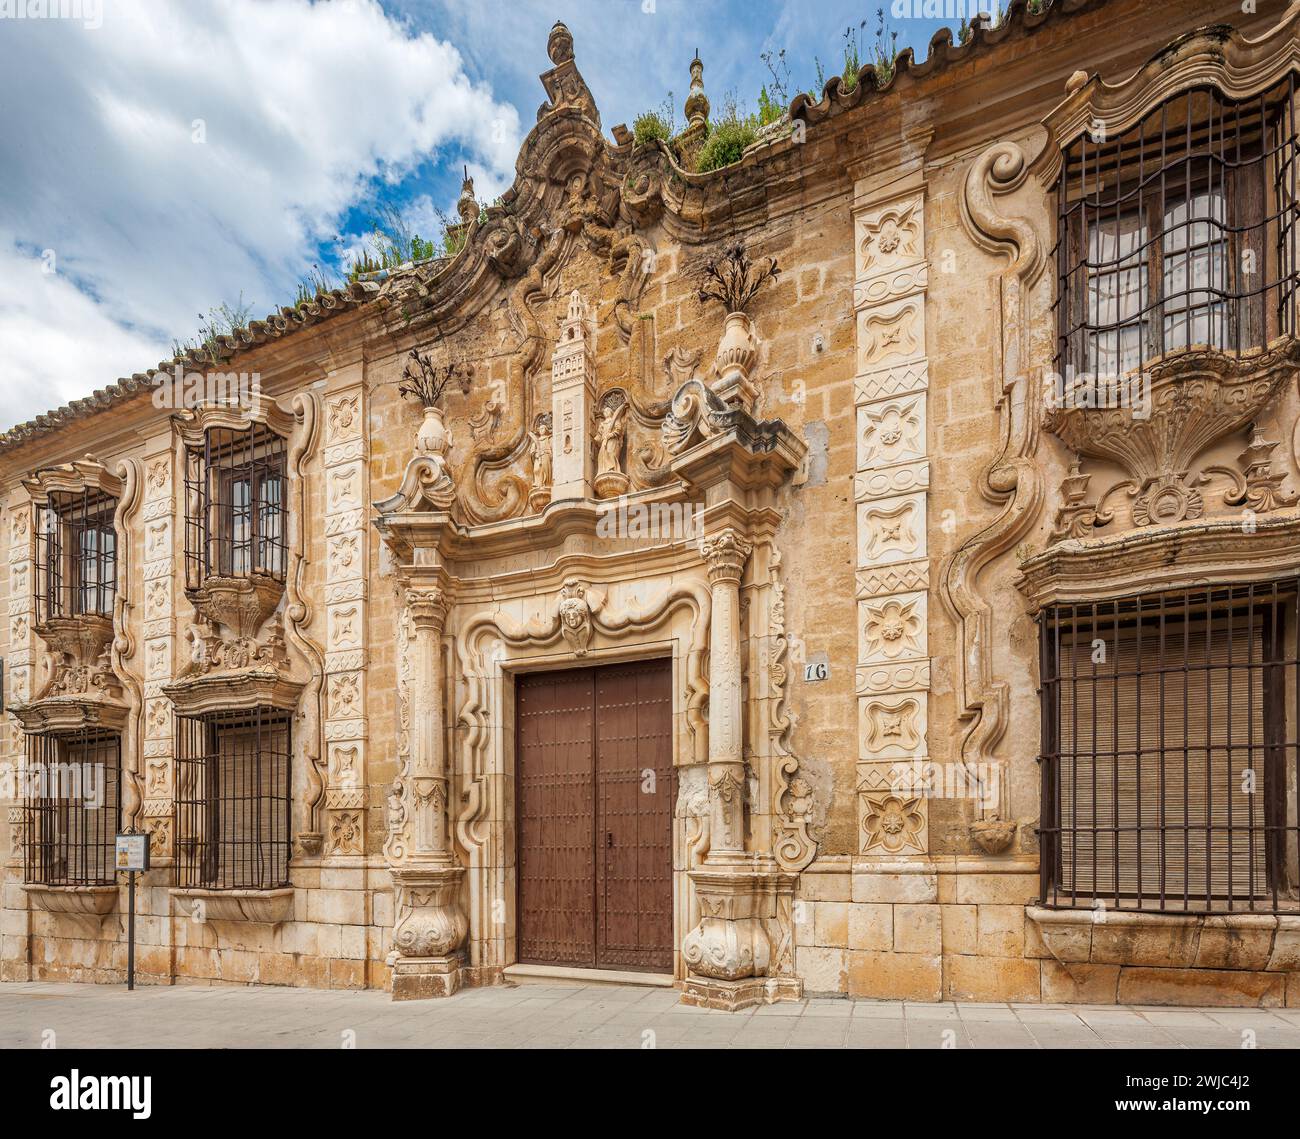 The Façade of Cilla del Cabildo Colegial in Osuna, Spain Stock Photo